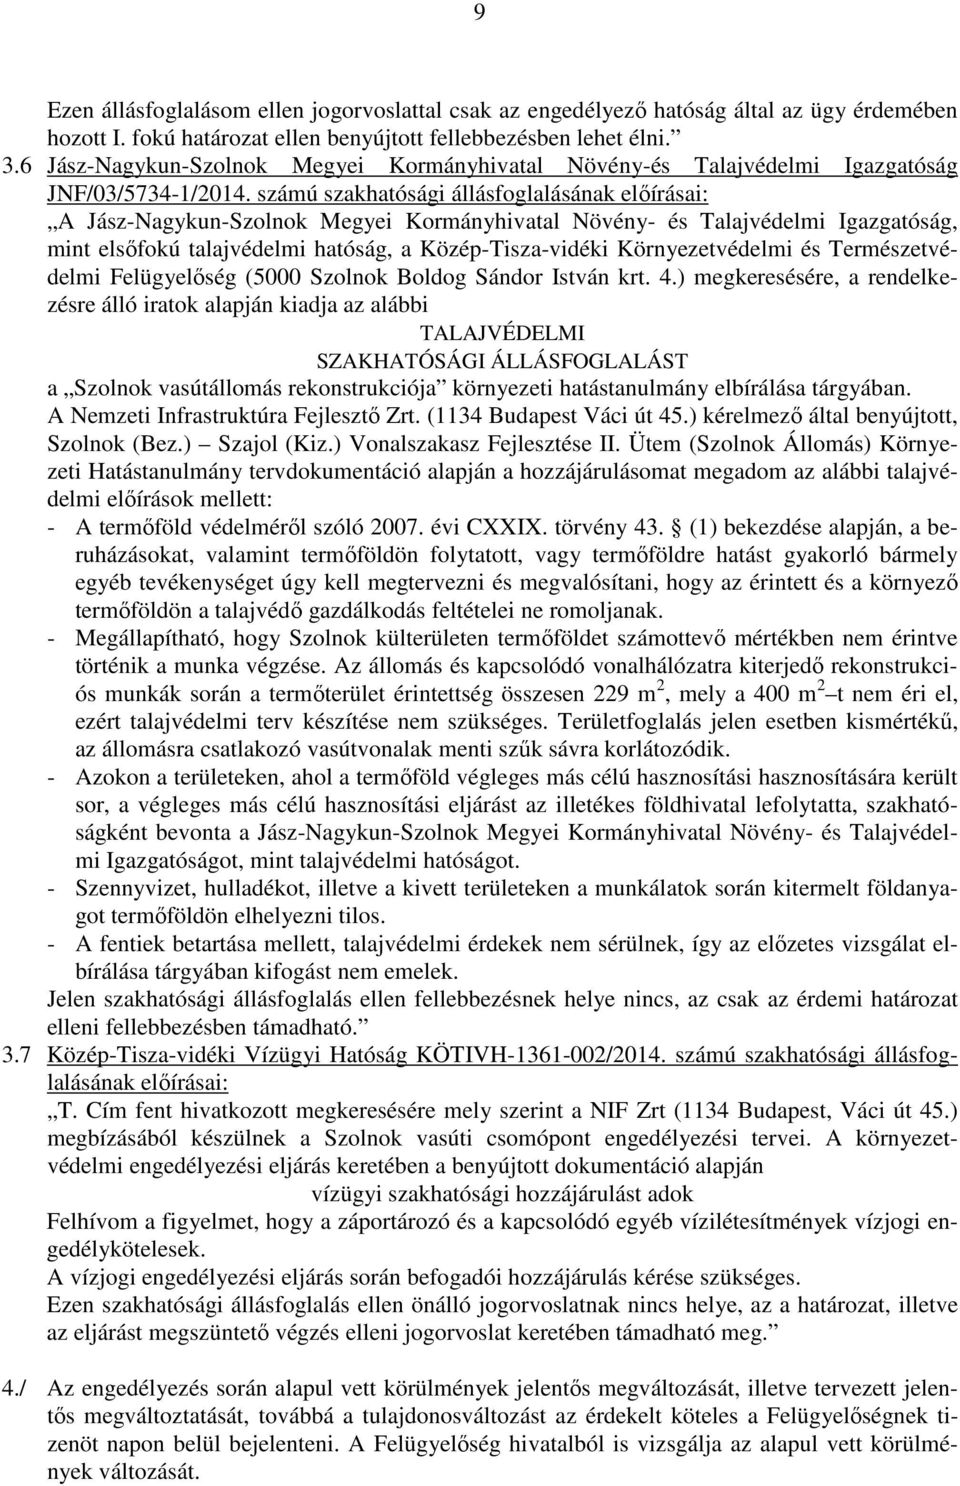 számú szakhatósági állásfoglalásának előírásai: A Jász-Nagykun-Szolnok Megyei Kormányhivatal Növény- és Talajvédelmi Igazgatóság, mint elsőfokú talajvédelmi hatóság, a Közép-Tisza-vidéki